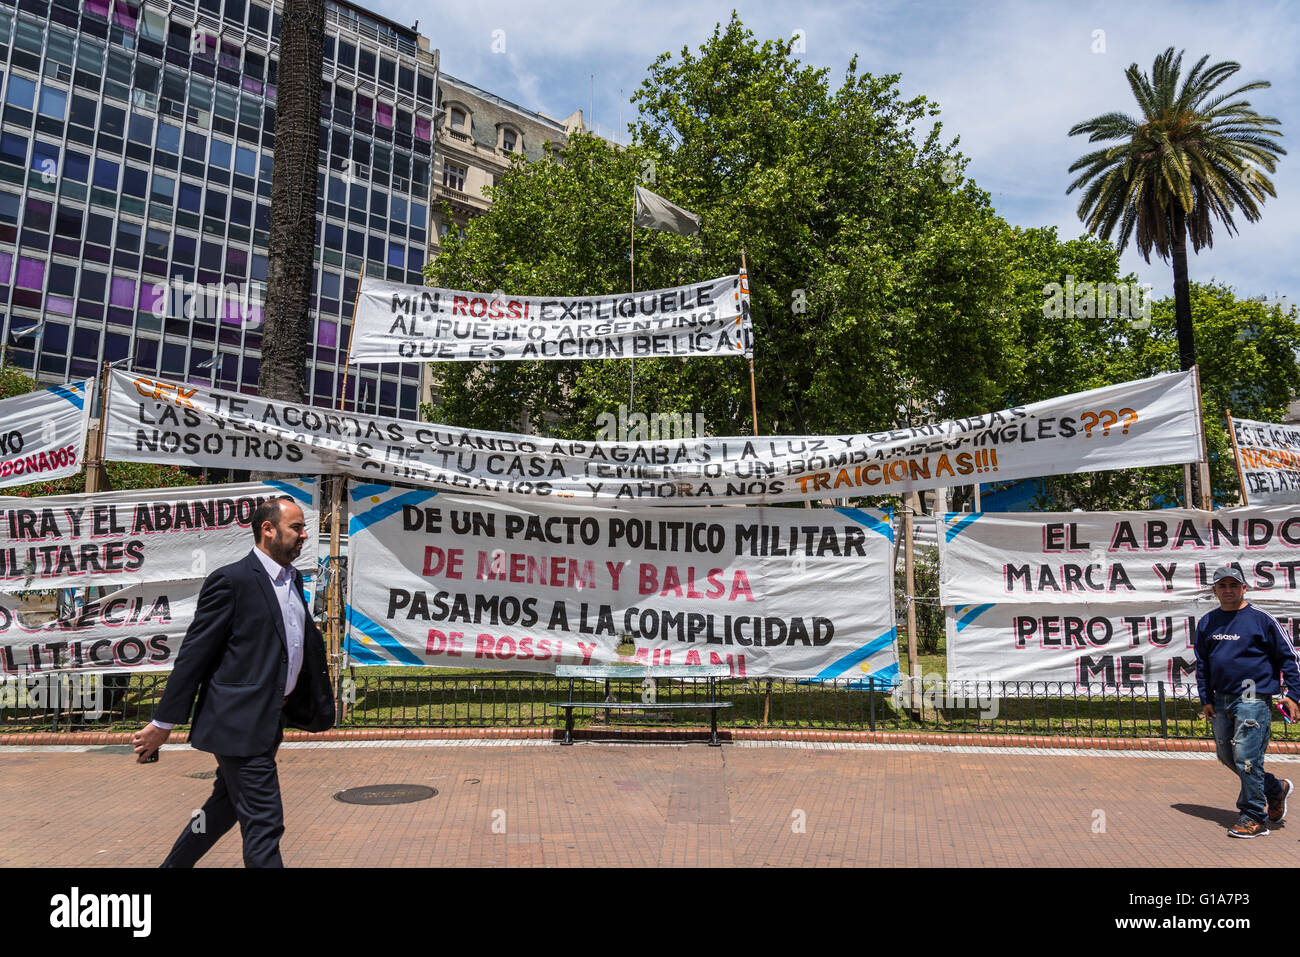 Pancartas de protesta política, Plaza de Mayo, Plaza de Mayo, Buenos Aires, Argentina Foto de stock